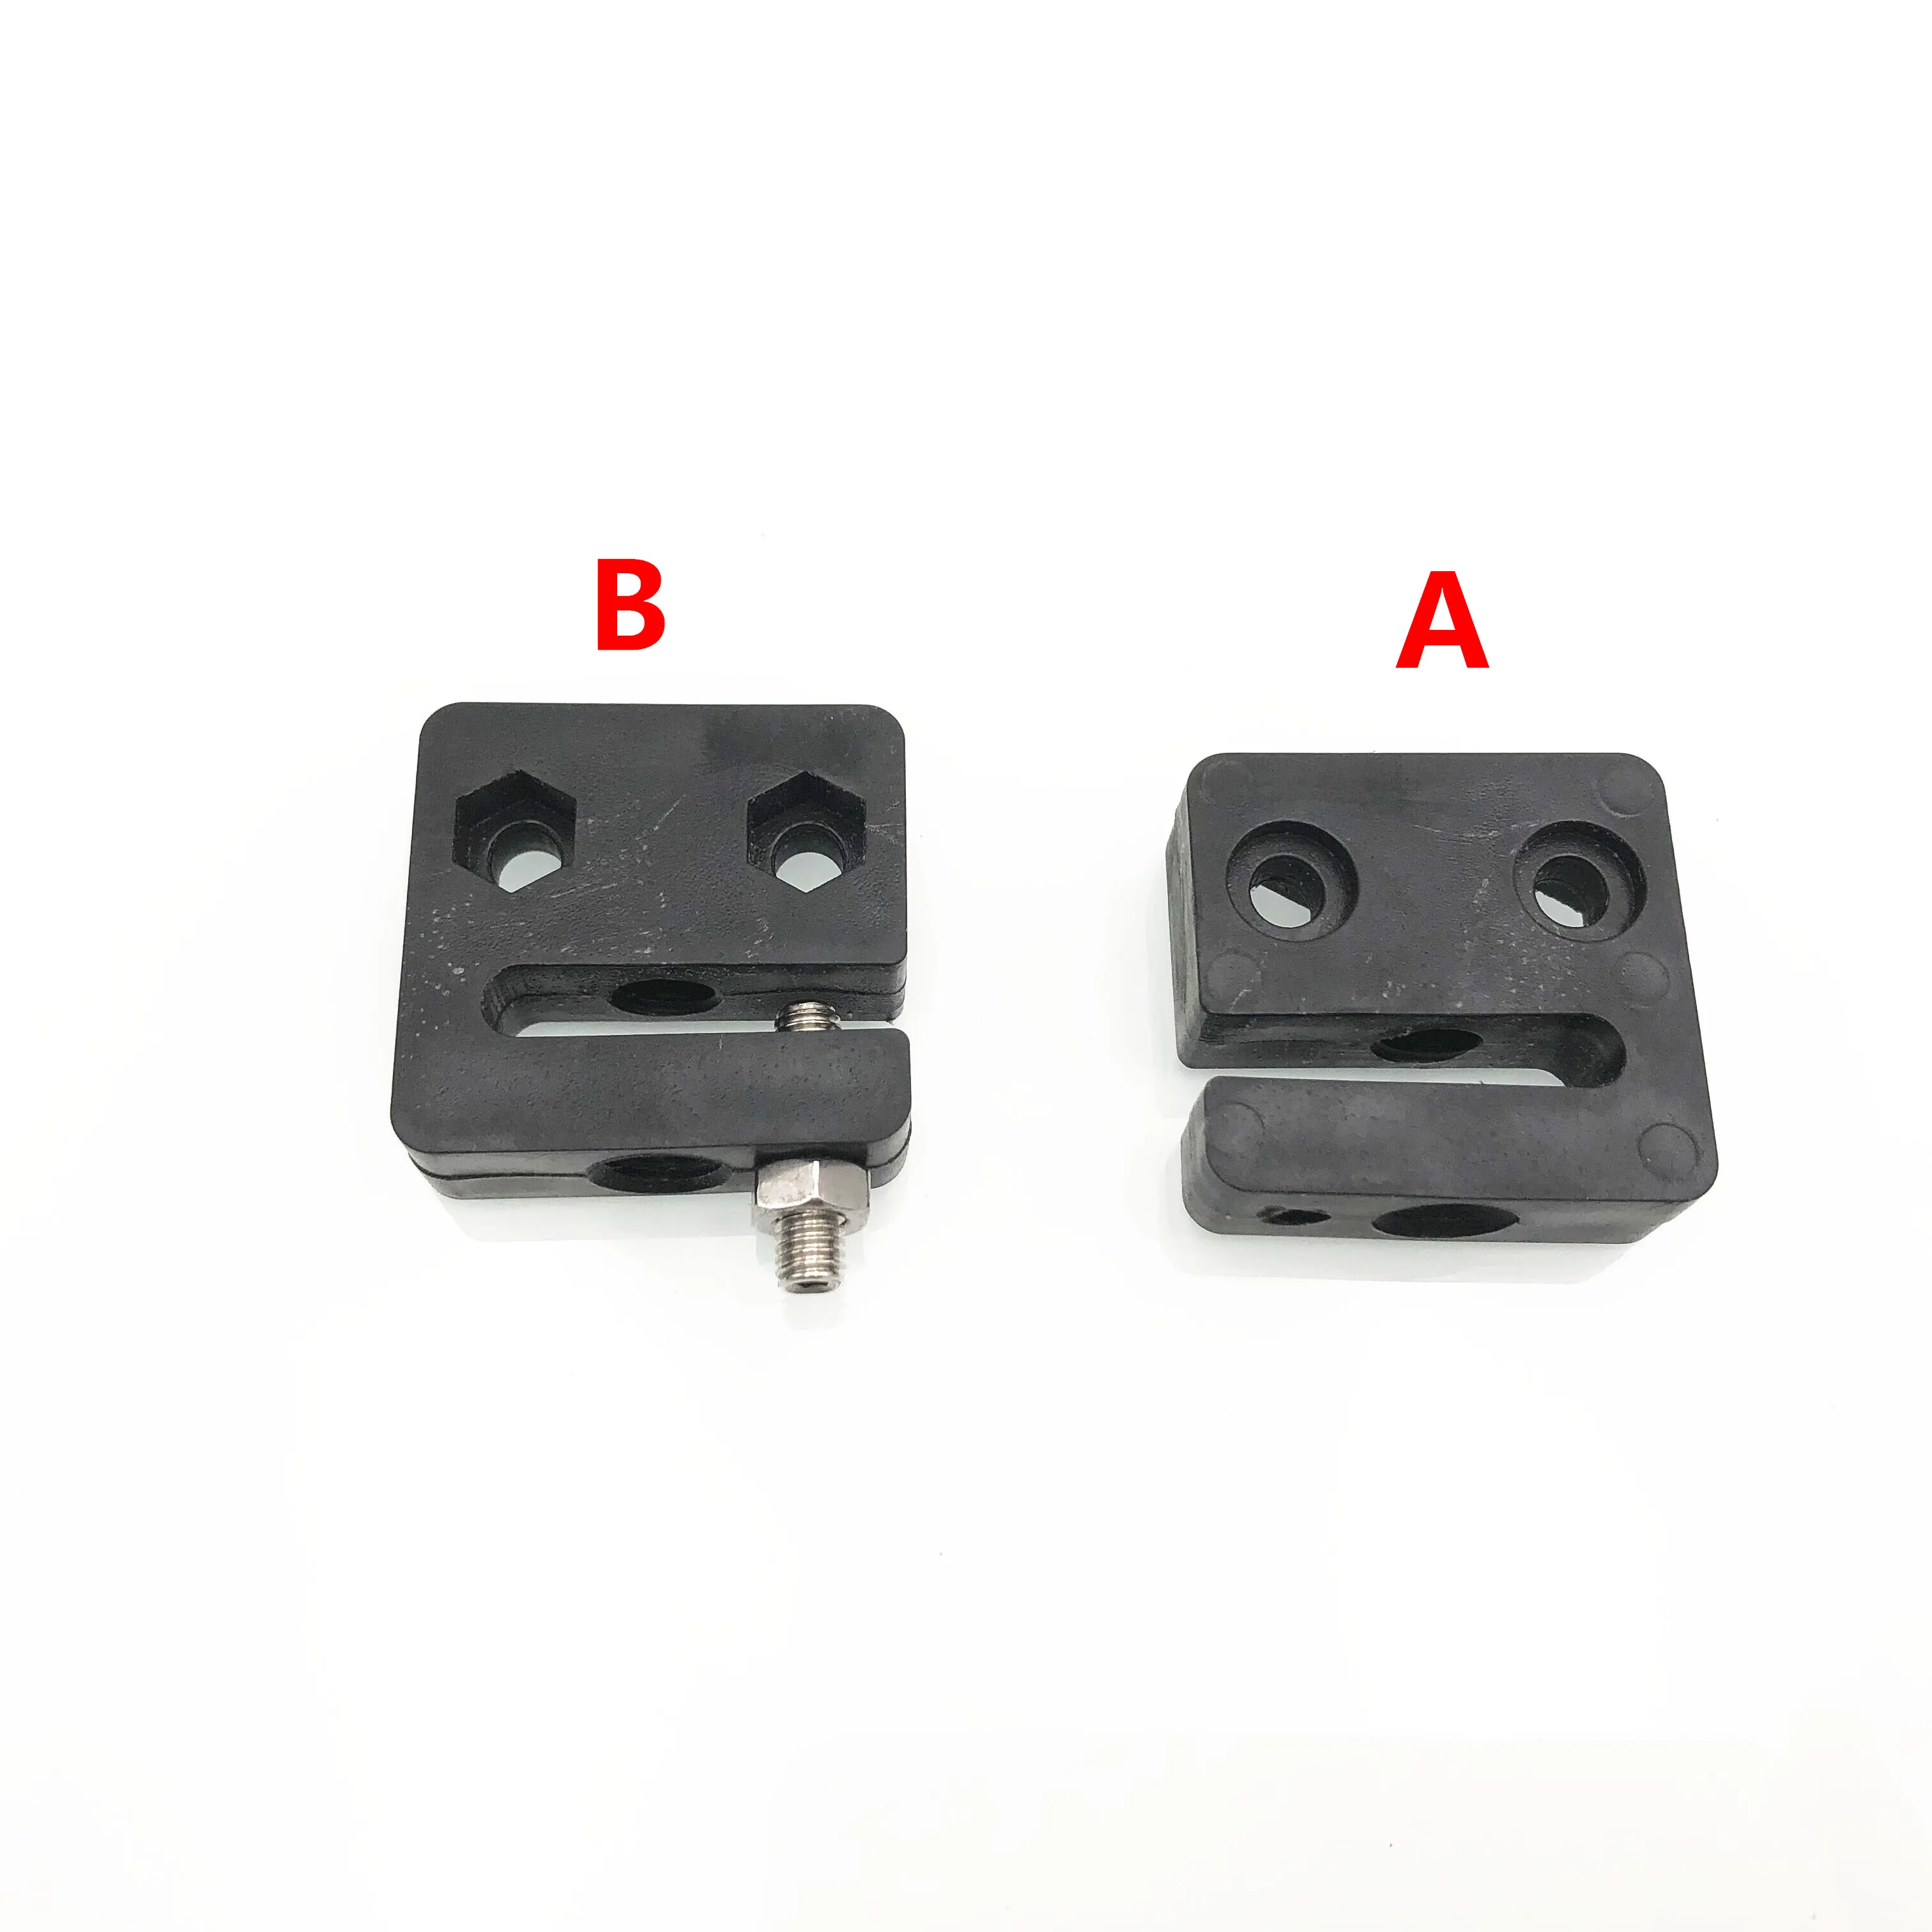 

Аксессуары для 3D-принтера T openbuilds тип анти-обратный гайка-блок T8 винт 8 мм шаг винта 2 мм вывод 2 мм 4 мм 8 мм 1 шт.